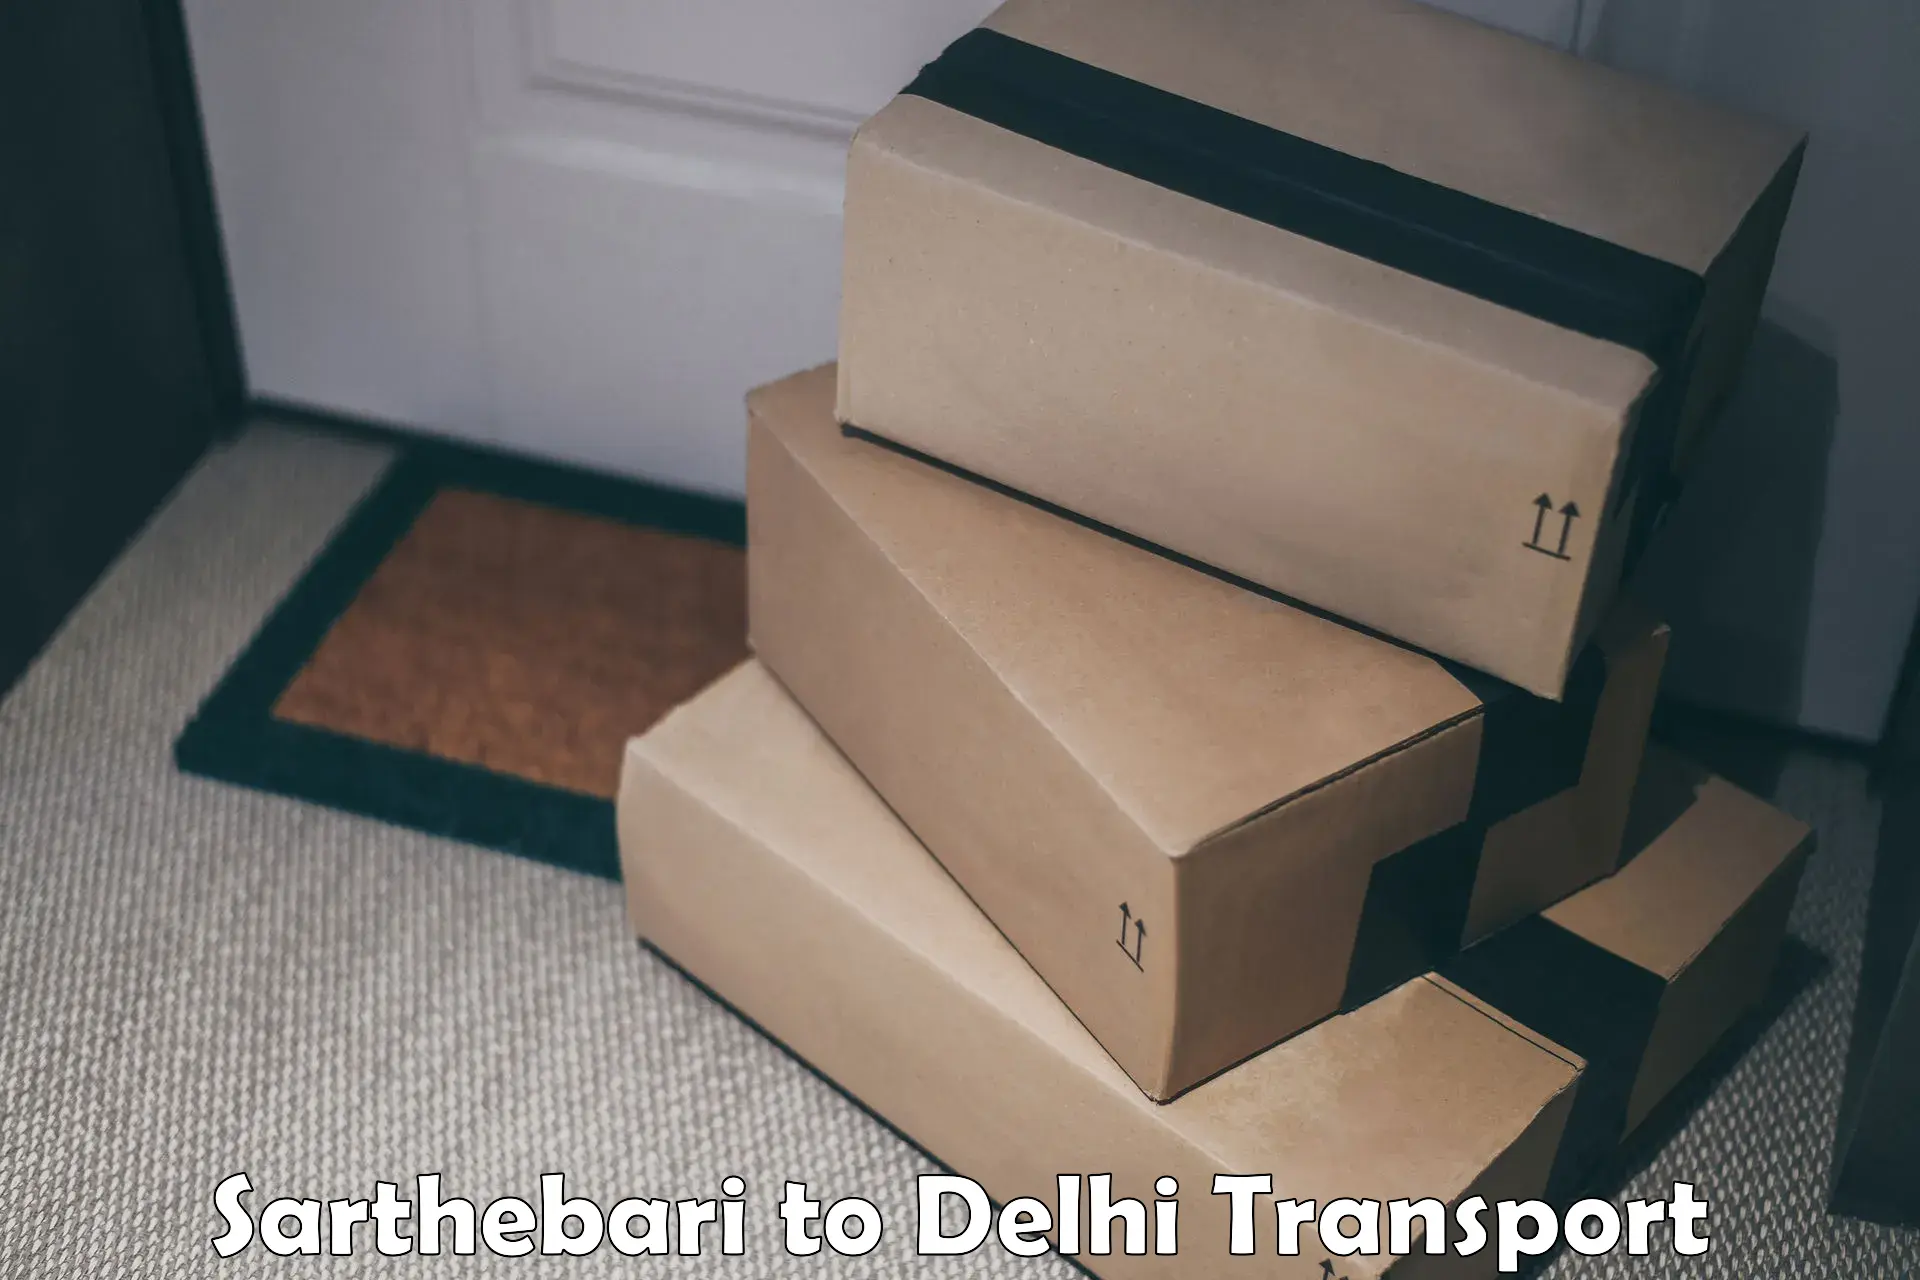 Road transport online services Sarthebari to East Delhi